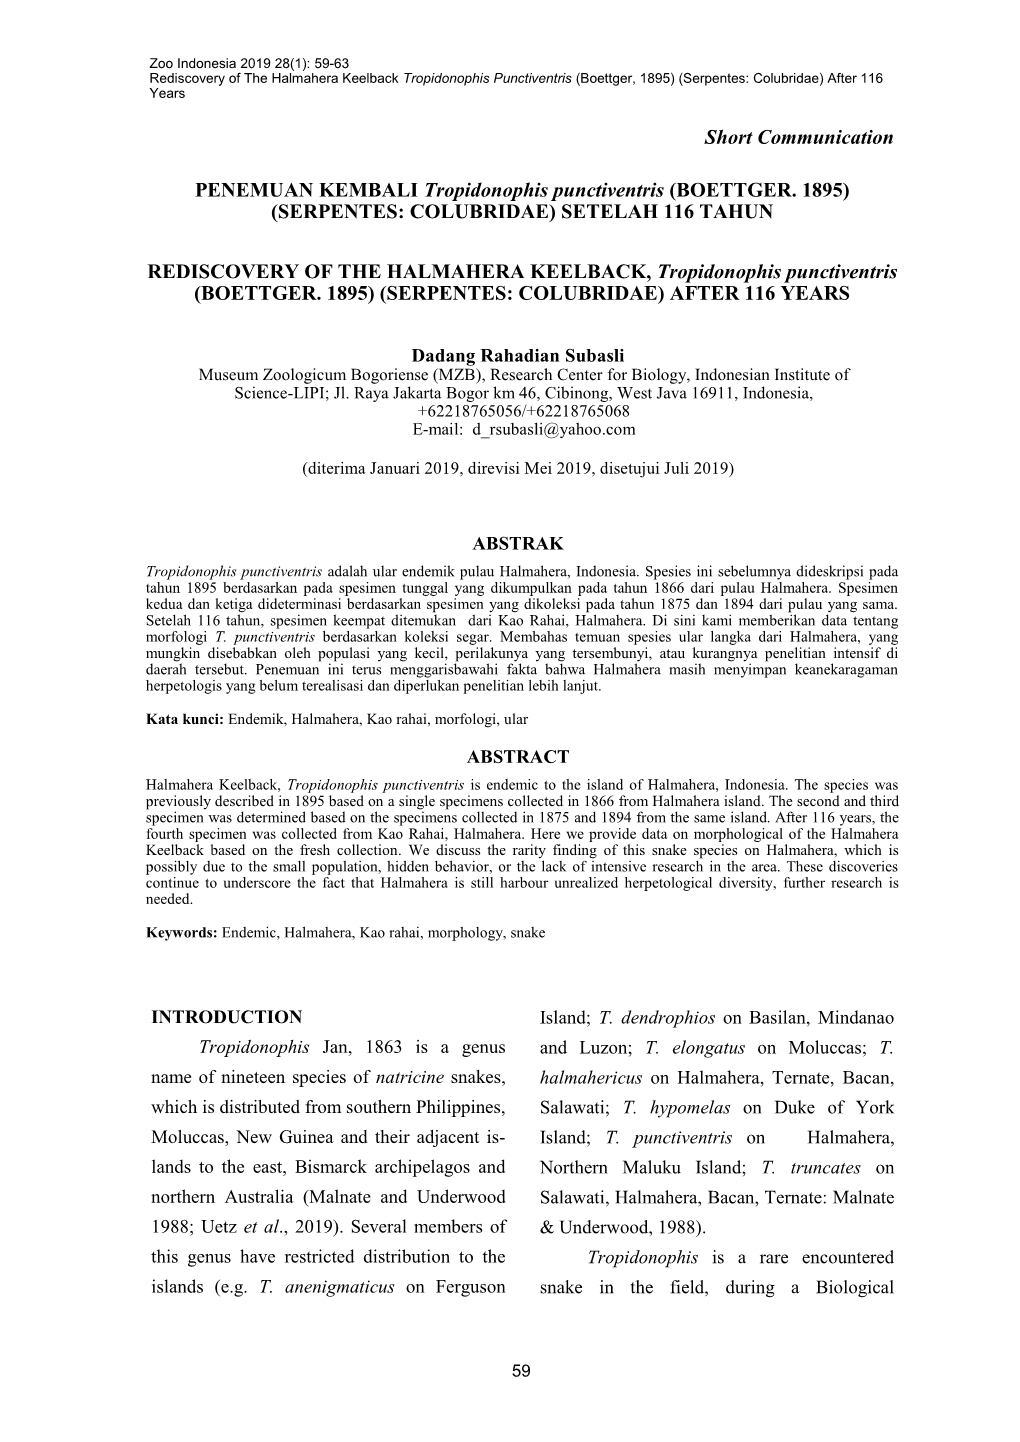 PENEMUAN KEMBALI Tropidonophis Punctiventris (BOETTGER. 1895) (SERPENTES: COLUBRIDAE) SETELAH 116 TAHUN